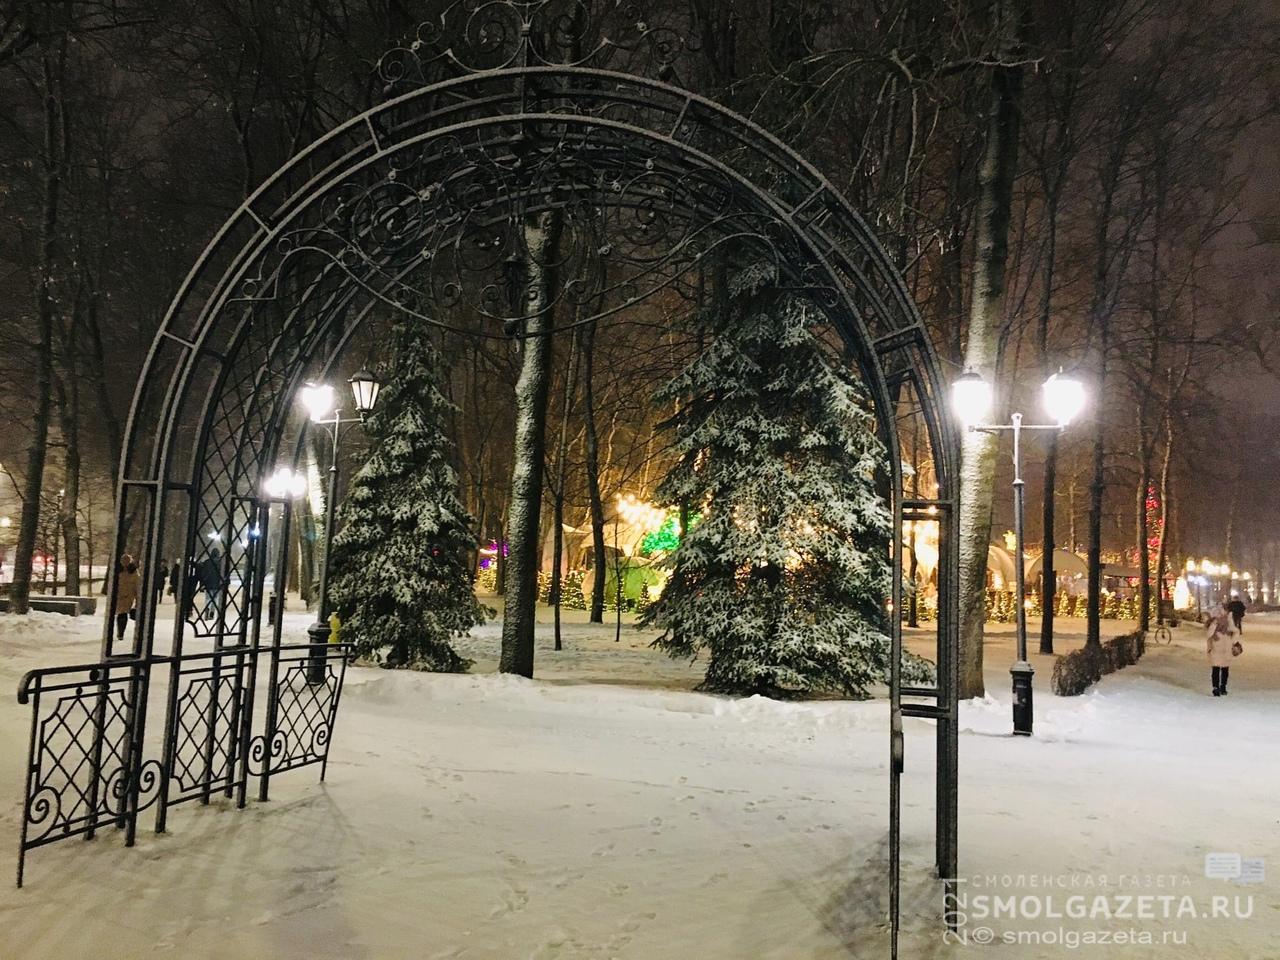 22 декабря в Смоленской области по-прежнему будет холодно